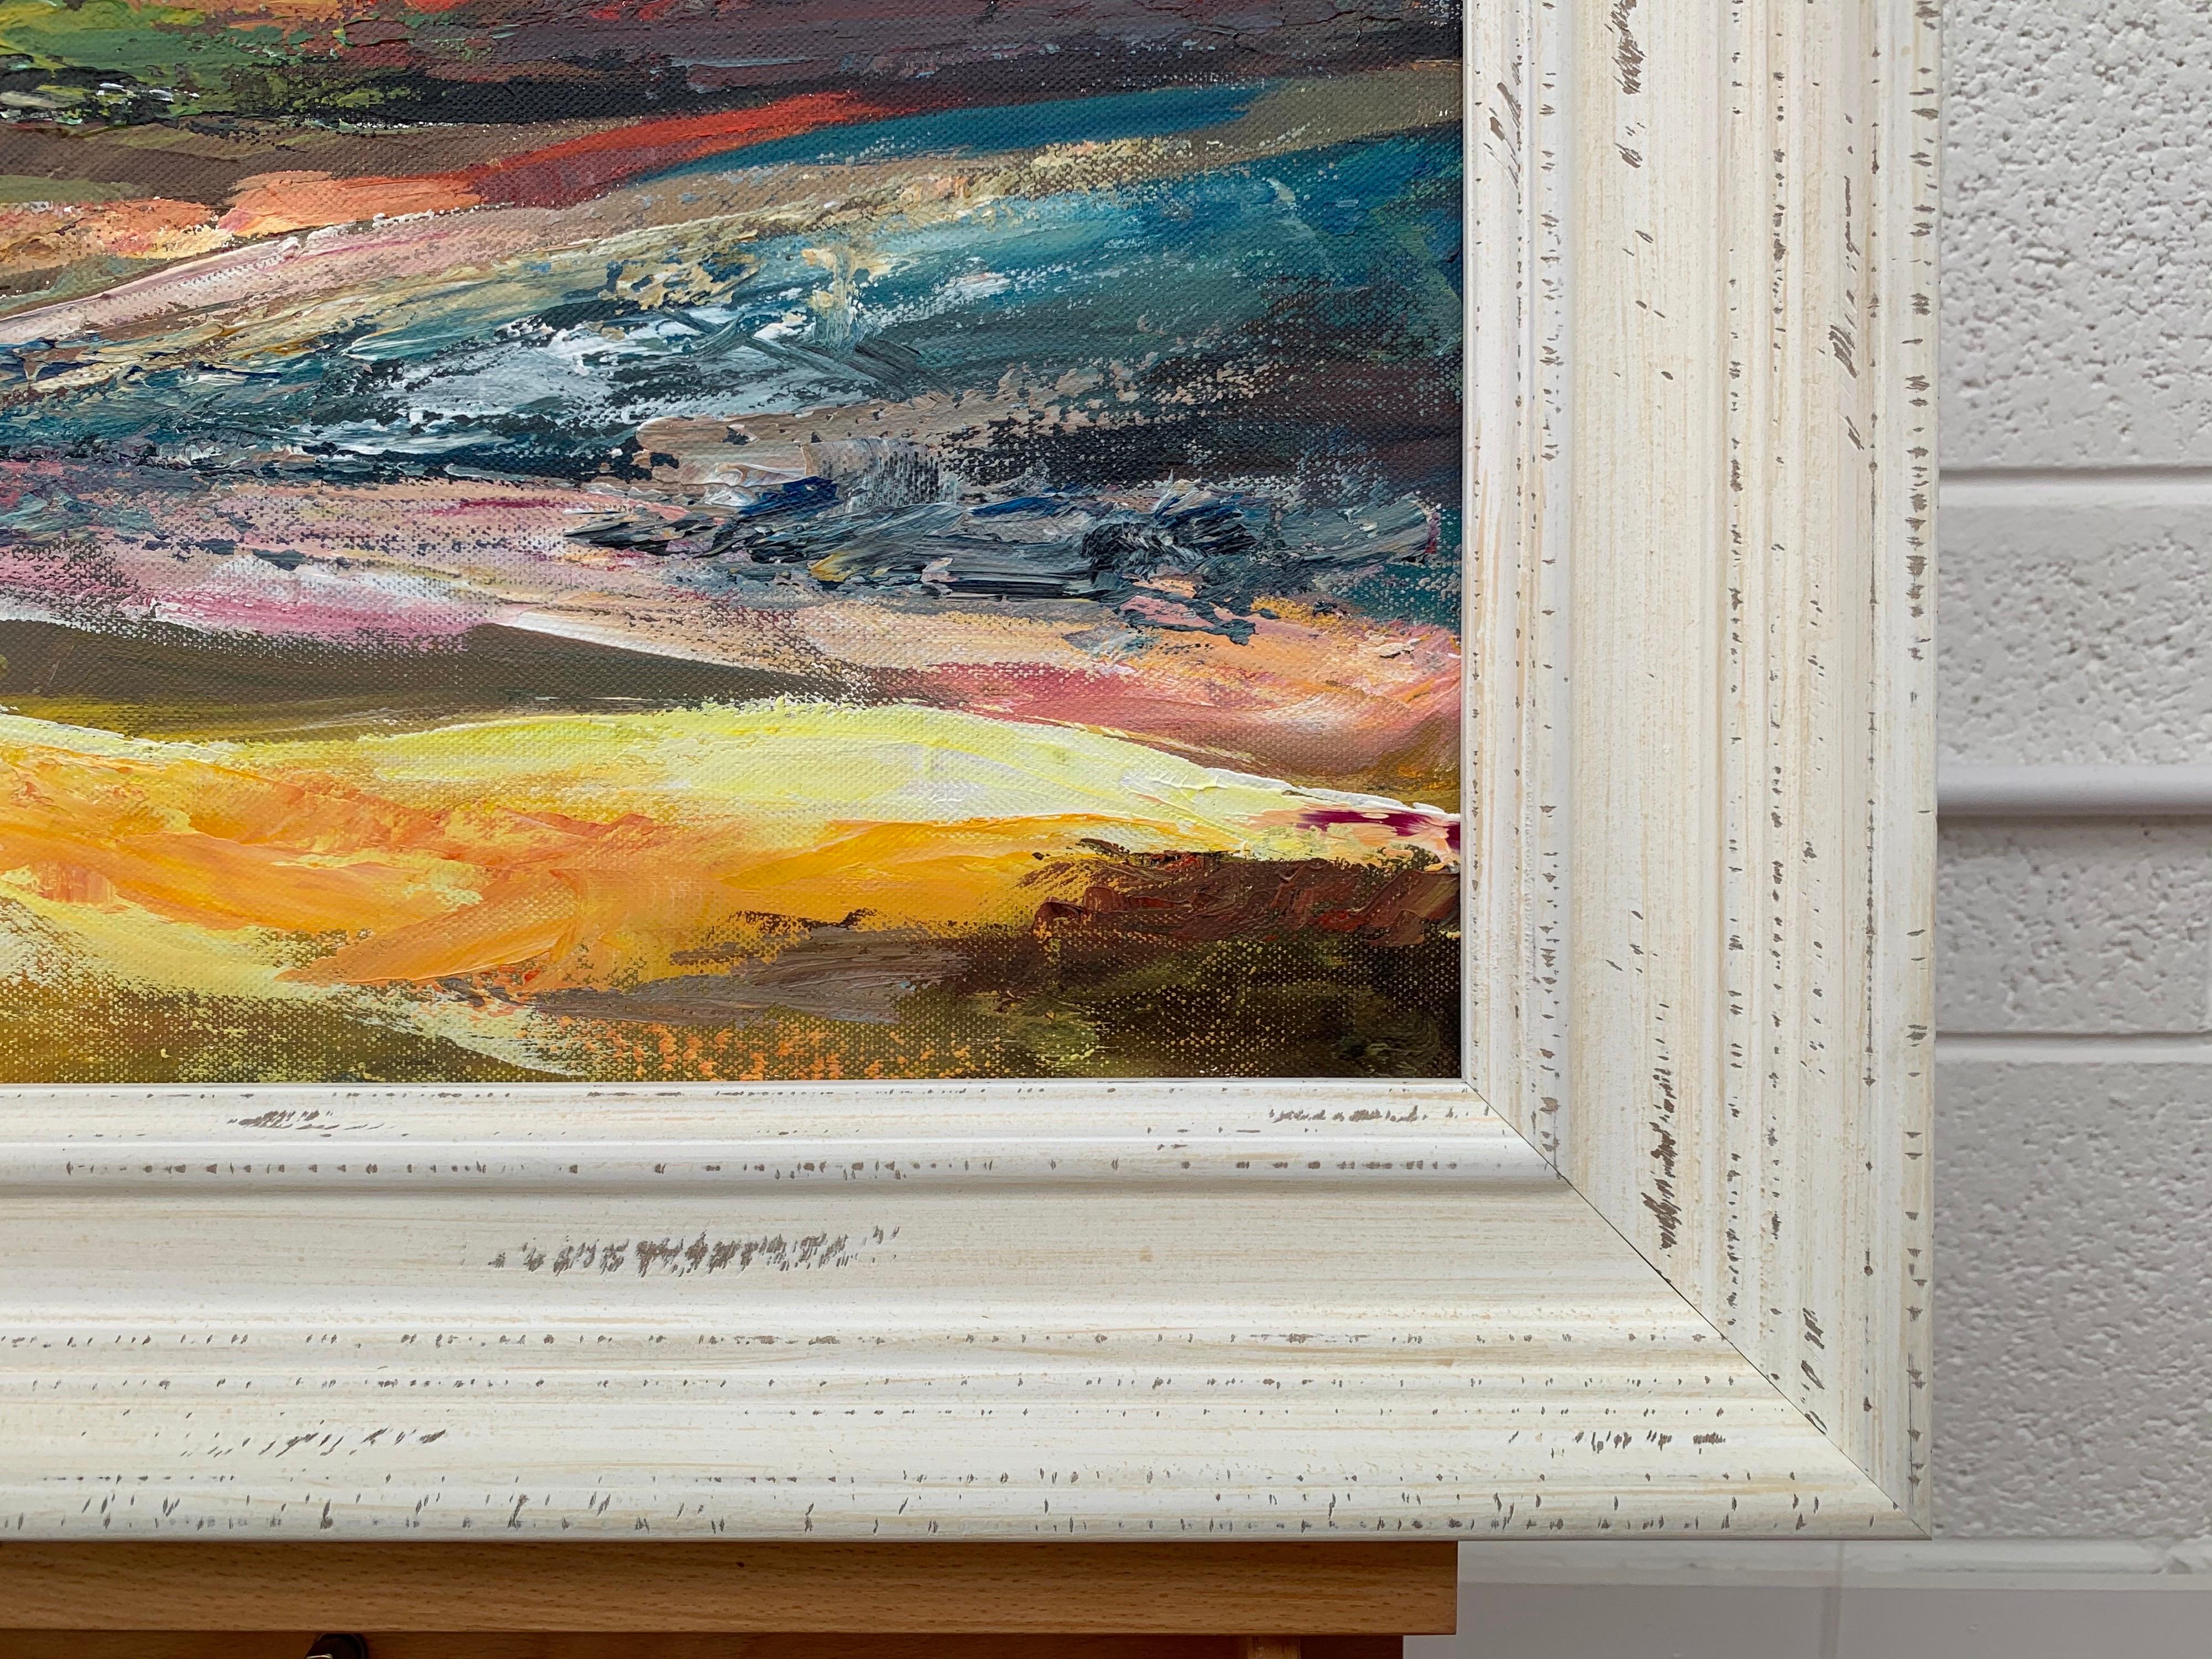 Paysage coloré de lande anglaise avec ciel rose par l'artiste britannique contemporaine de premier plan, Angela Wakefield. Cet original fait partie de sa série de paysages abstraits.

L'œuvre d'art mesure 20 x 16 pouces
Le cadre mesure 26 x 22